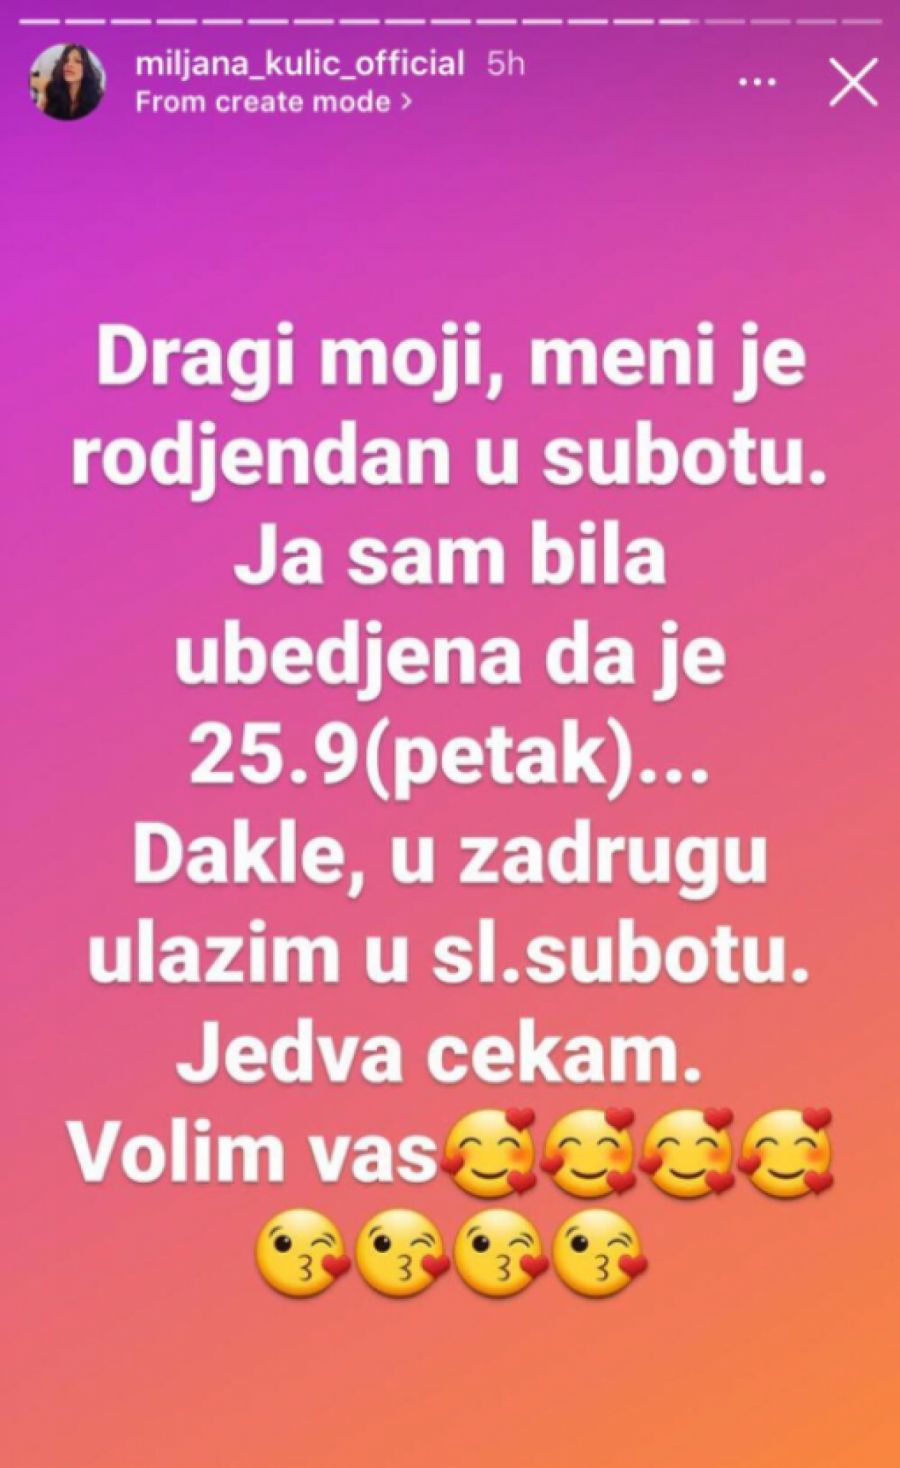 EVO KADA SE VRAĆA U ZADRUGU Miljani Kulić produkcija oprostila požar, zadrugarka otkrila tačan datum povratka!